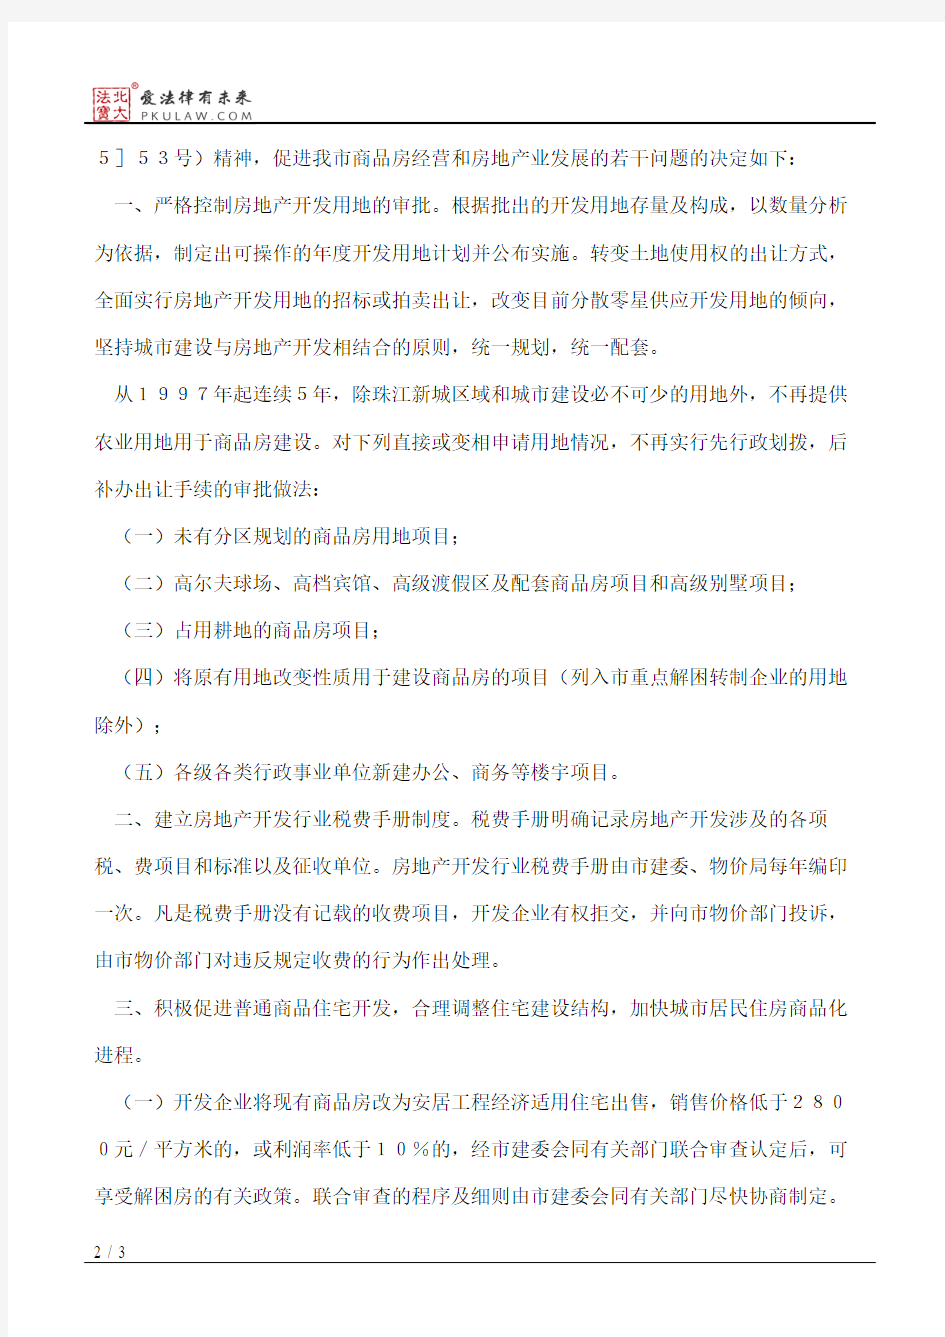 广州市人民政府关于促进我市商品房经营和房地产业发展若干问题的决定